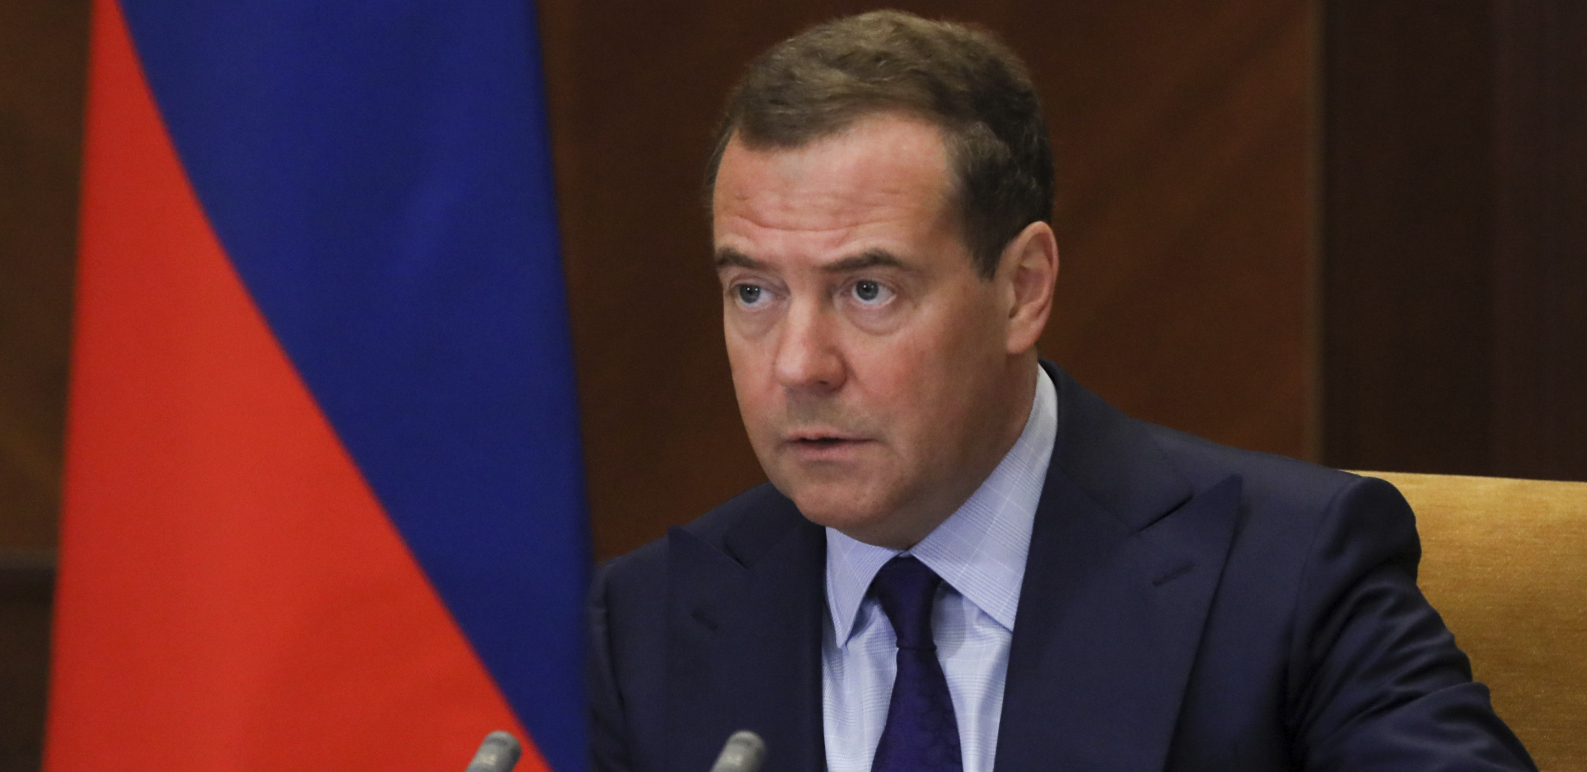 NIŠTA DRUGO DO PARANOJA Oglasio se Medvedev o mogućem nuklearnom napadu